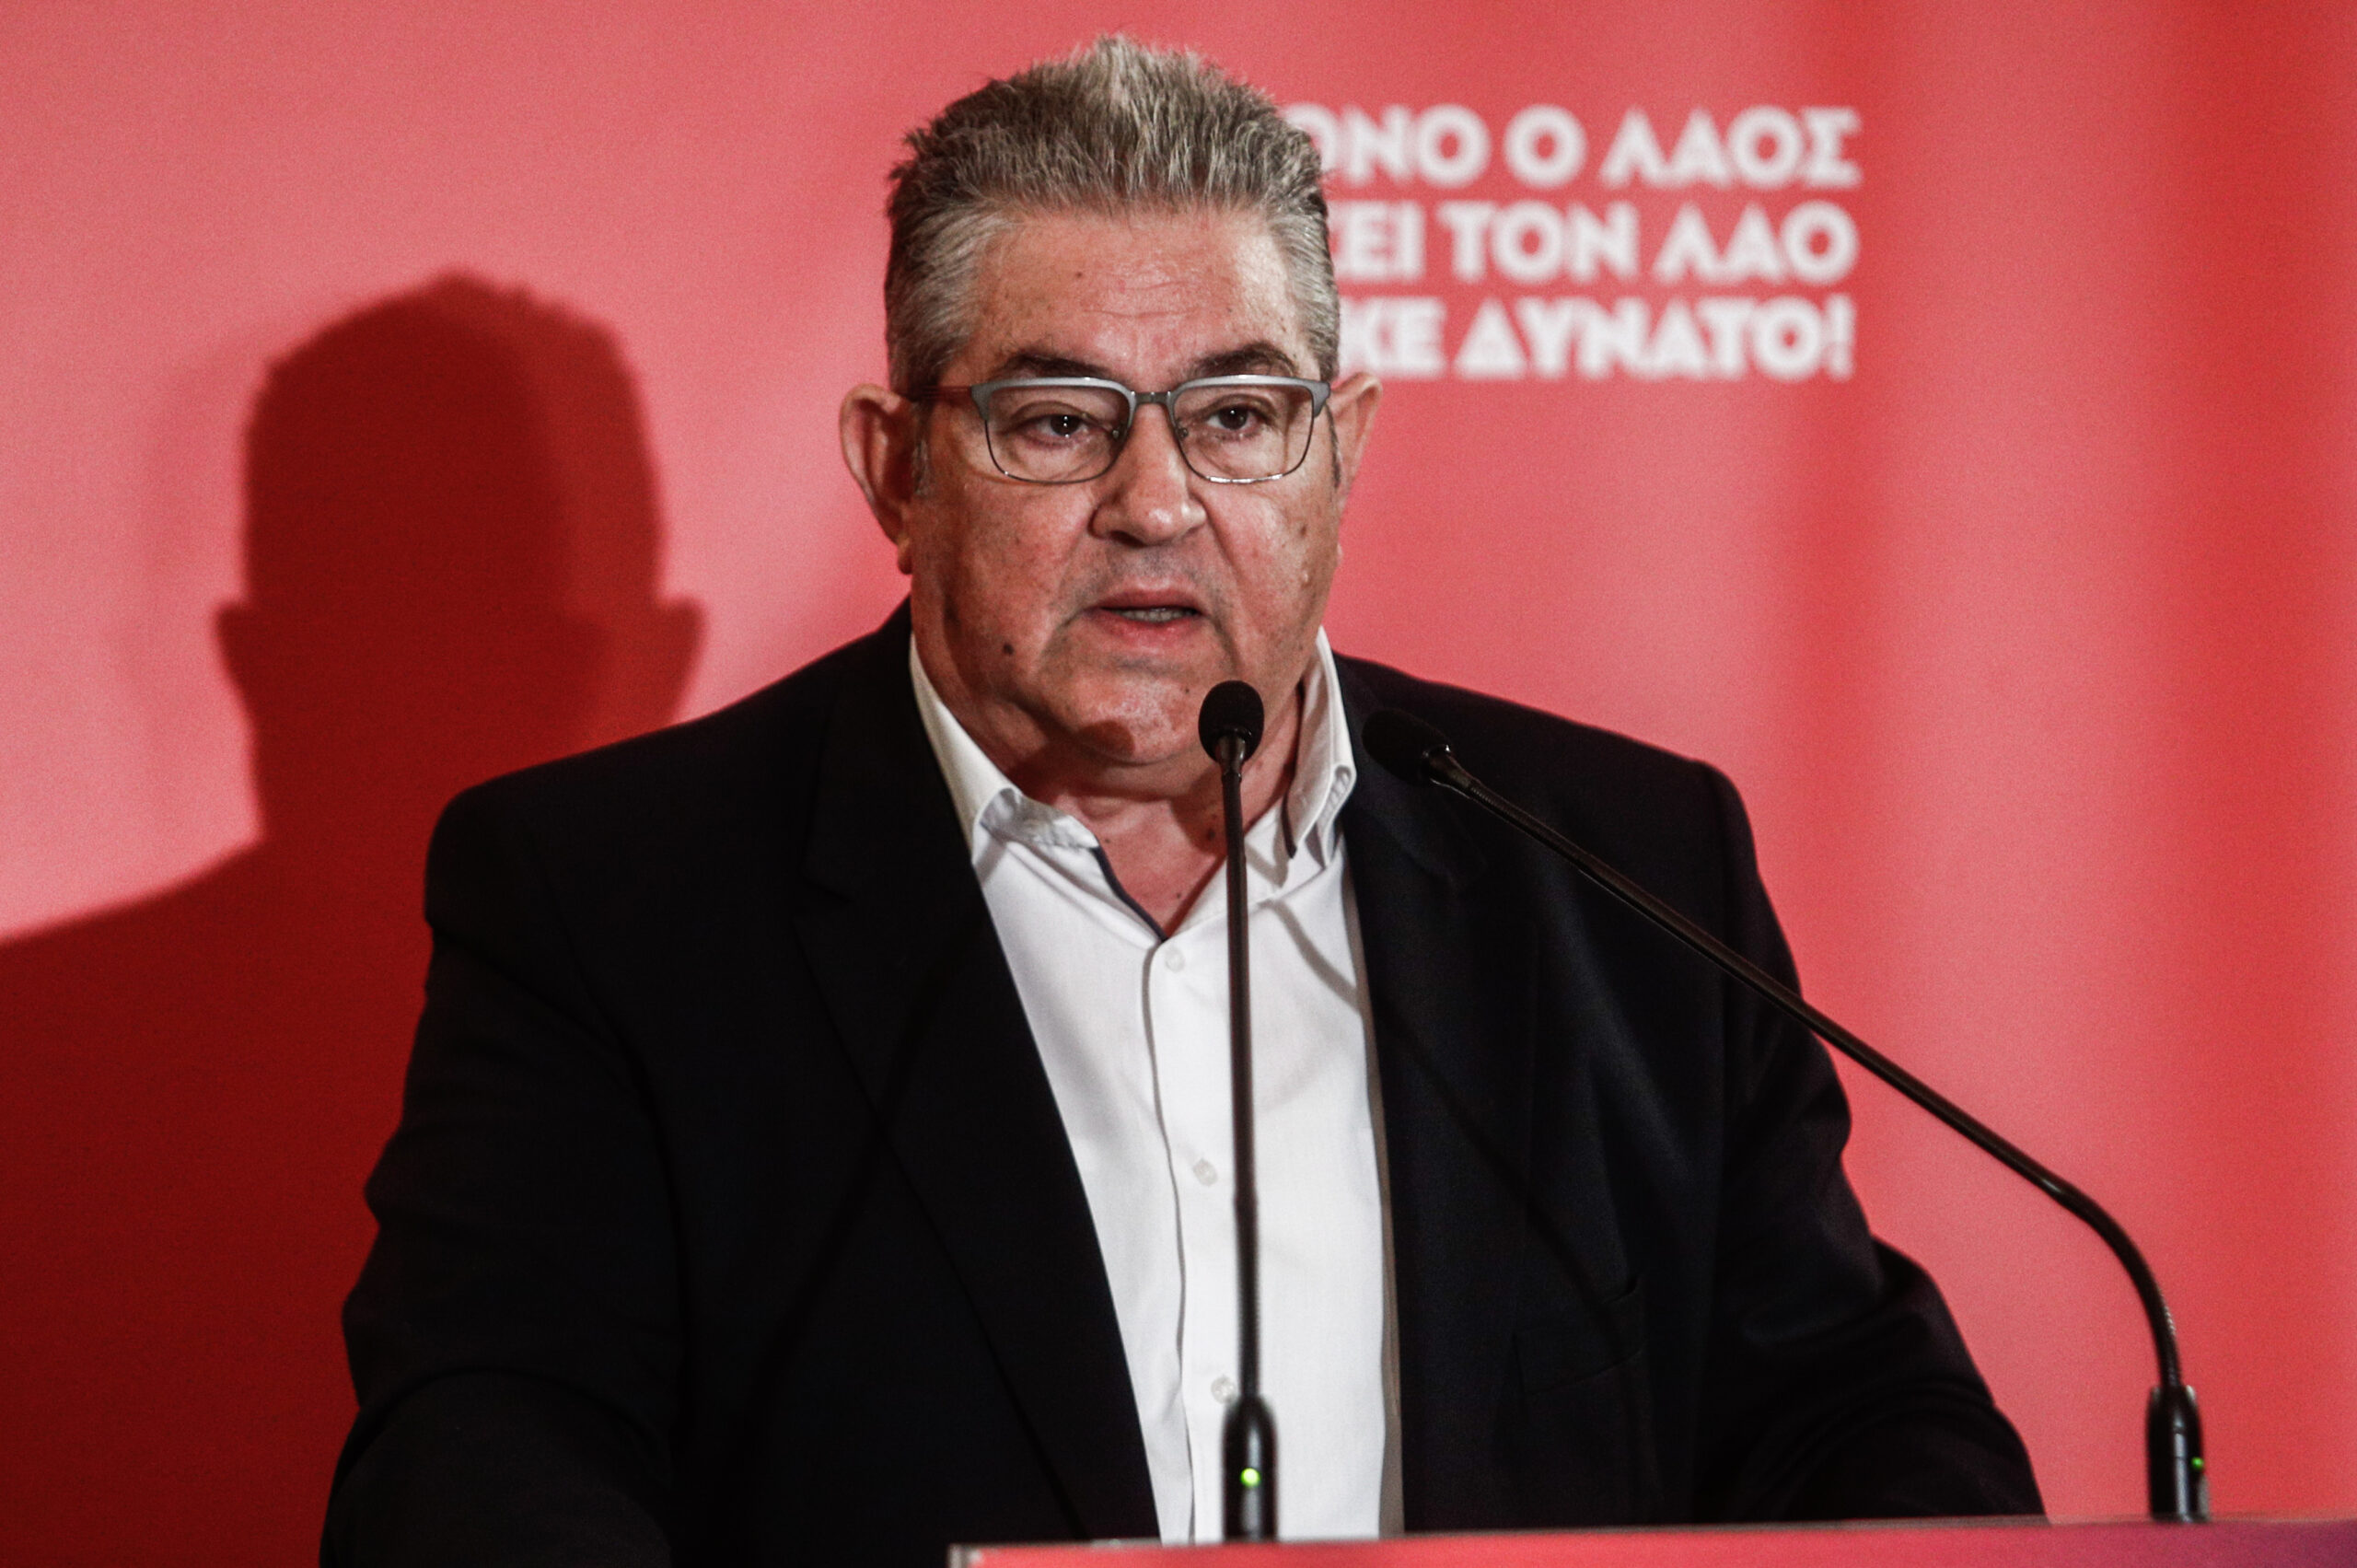 Δ. Κουτσούμπας: Όσο πιο δυνατό είναι το ΚΚΕ τόσο πιο δυνατός θα είναι ο λαός – Ο όρος «Αριστερά» έχει ταλαιπωρηθεί στην Ελλάδα